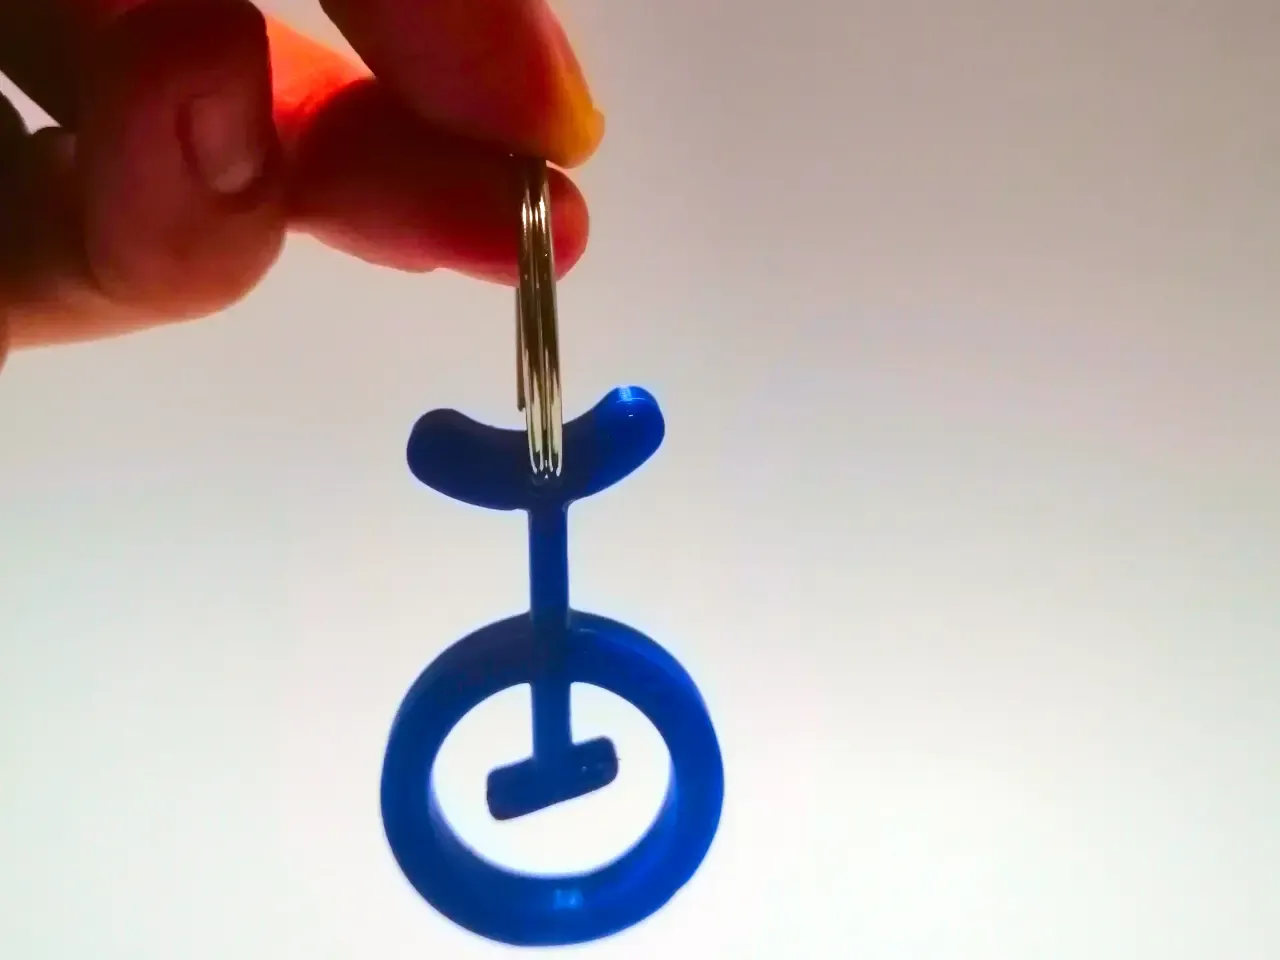 Unicycle keychain